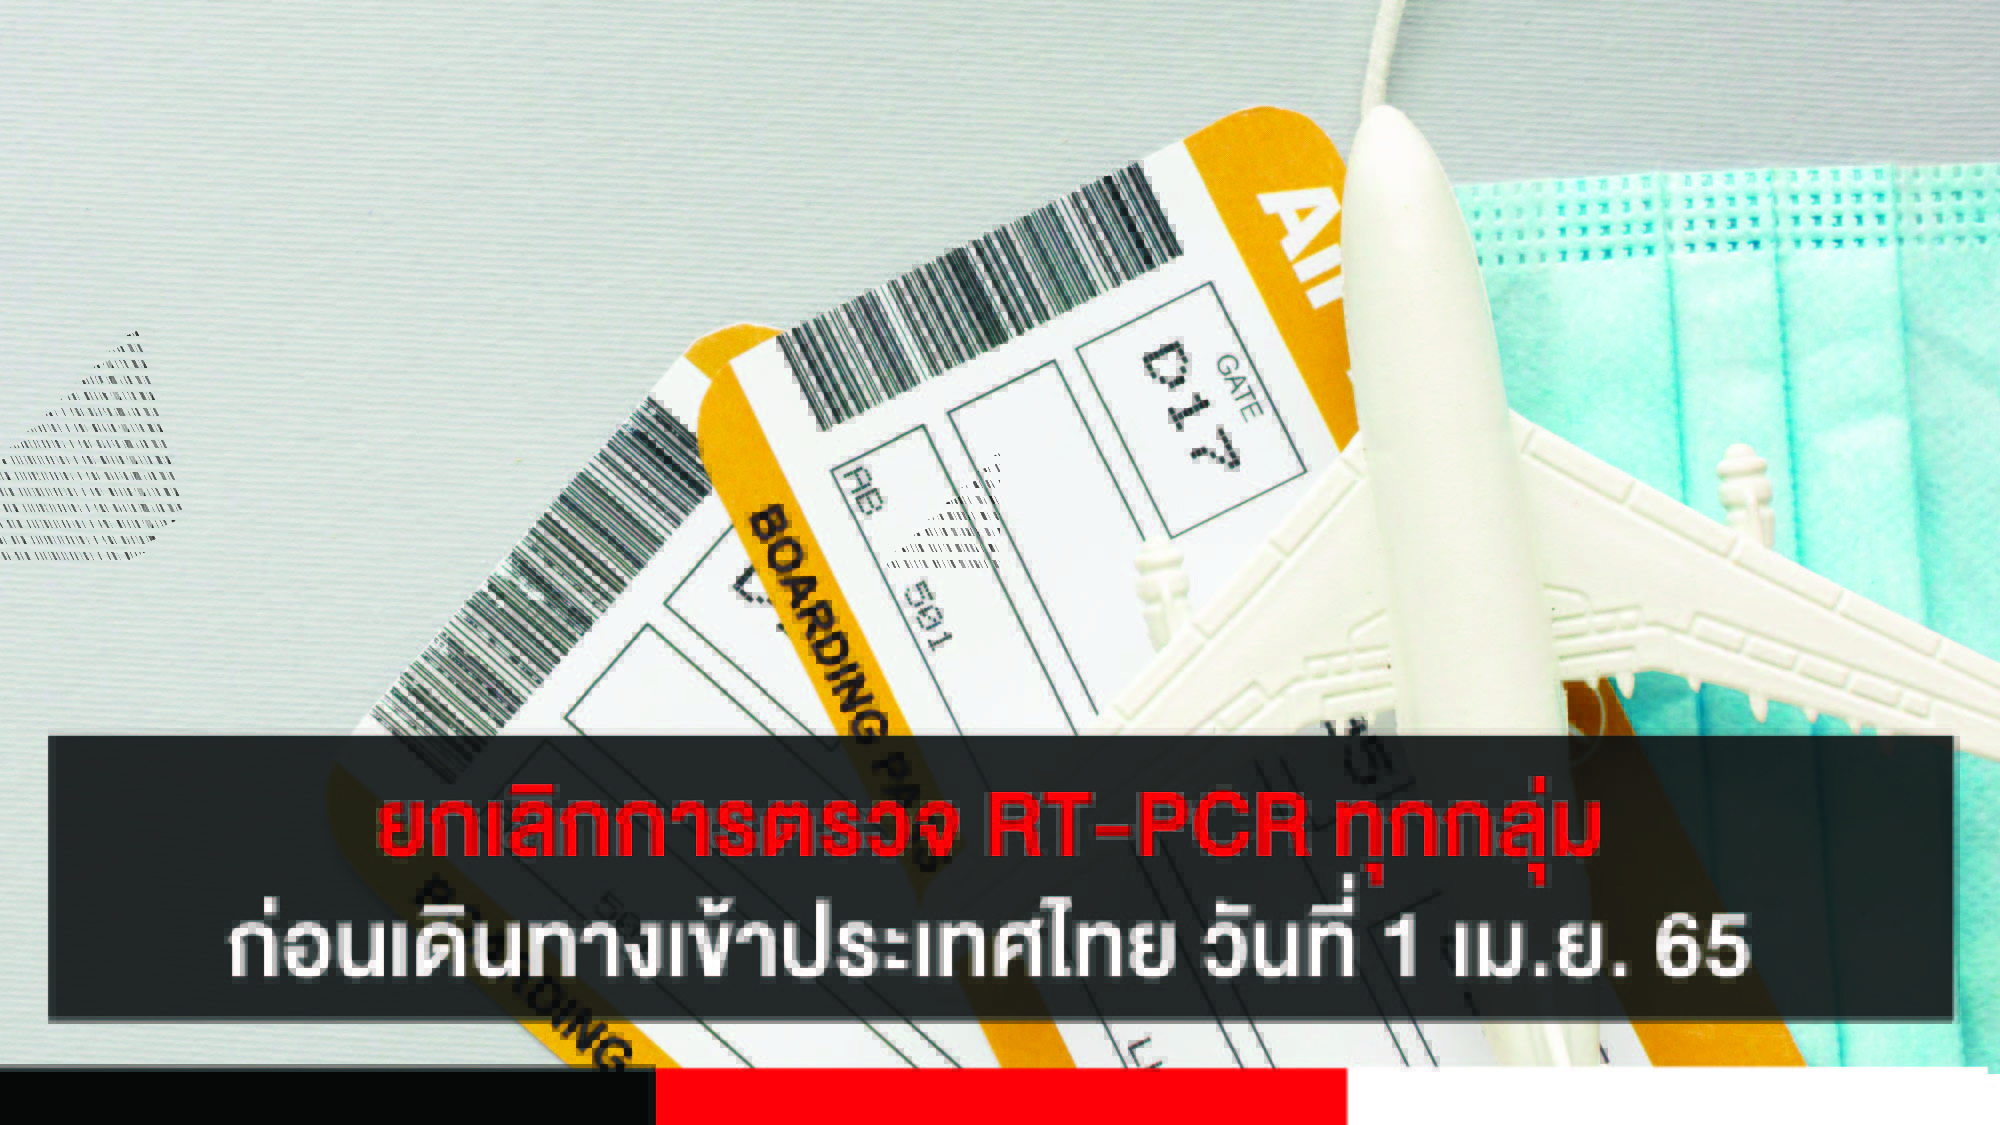 ยกเลิกการตรวจ RT-PCR ทุกกลุ่มก่อนเดินทางเข้าประเทศไทย ตั้งแต่วันที่ 1 เมษายน 2565